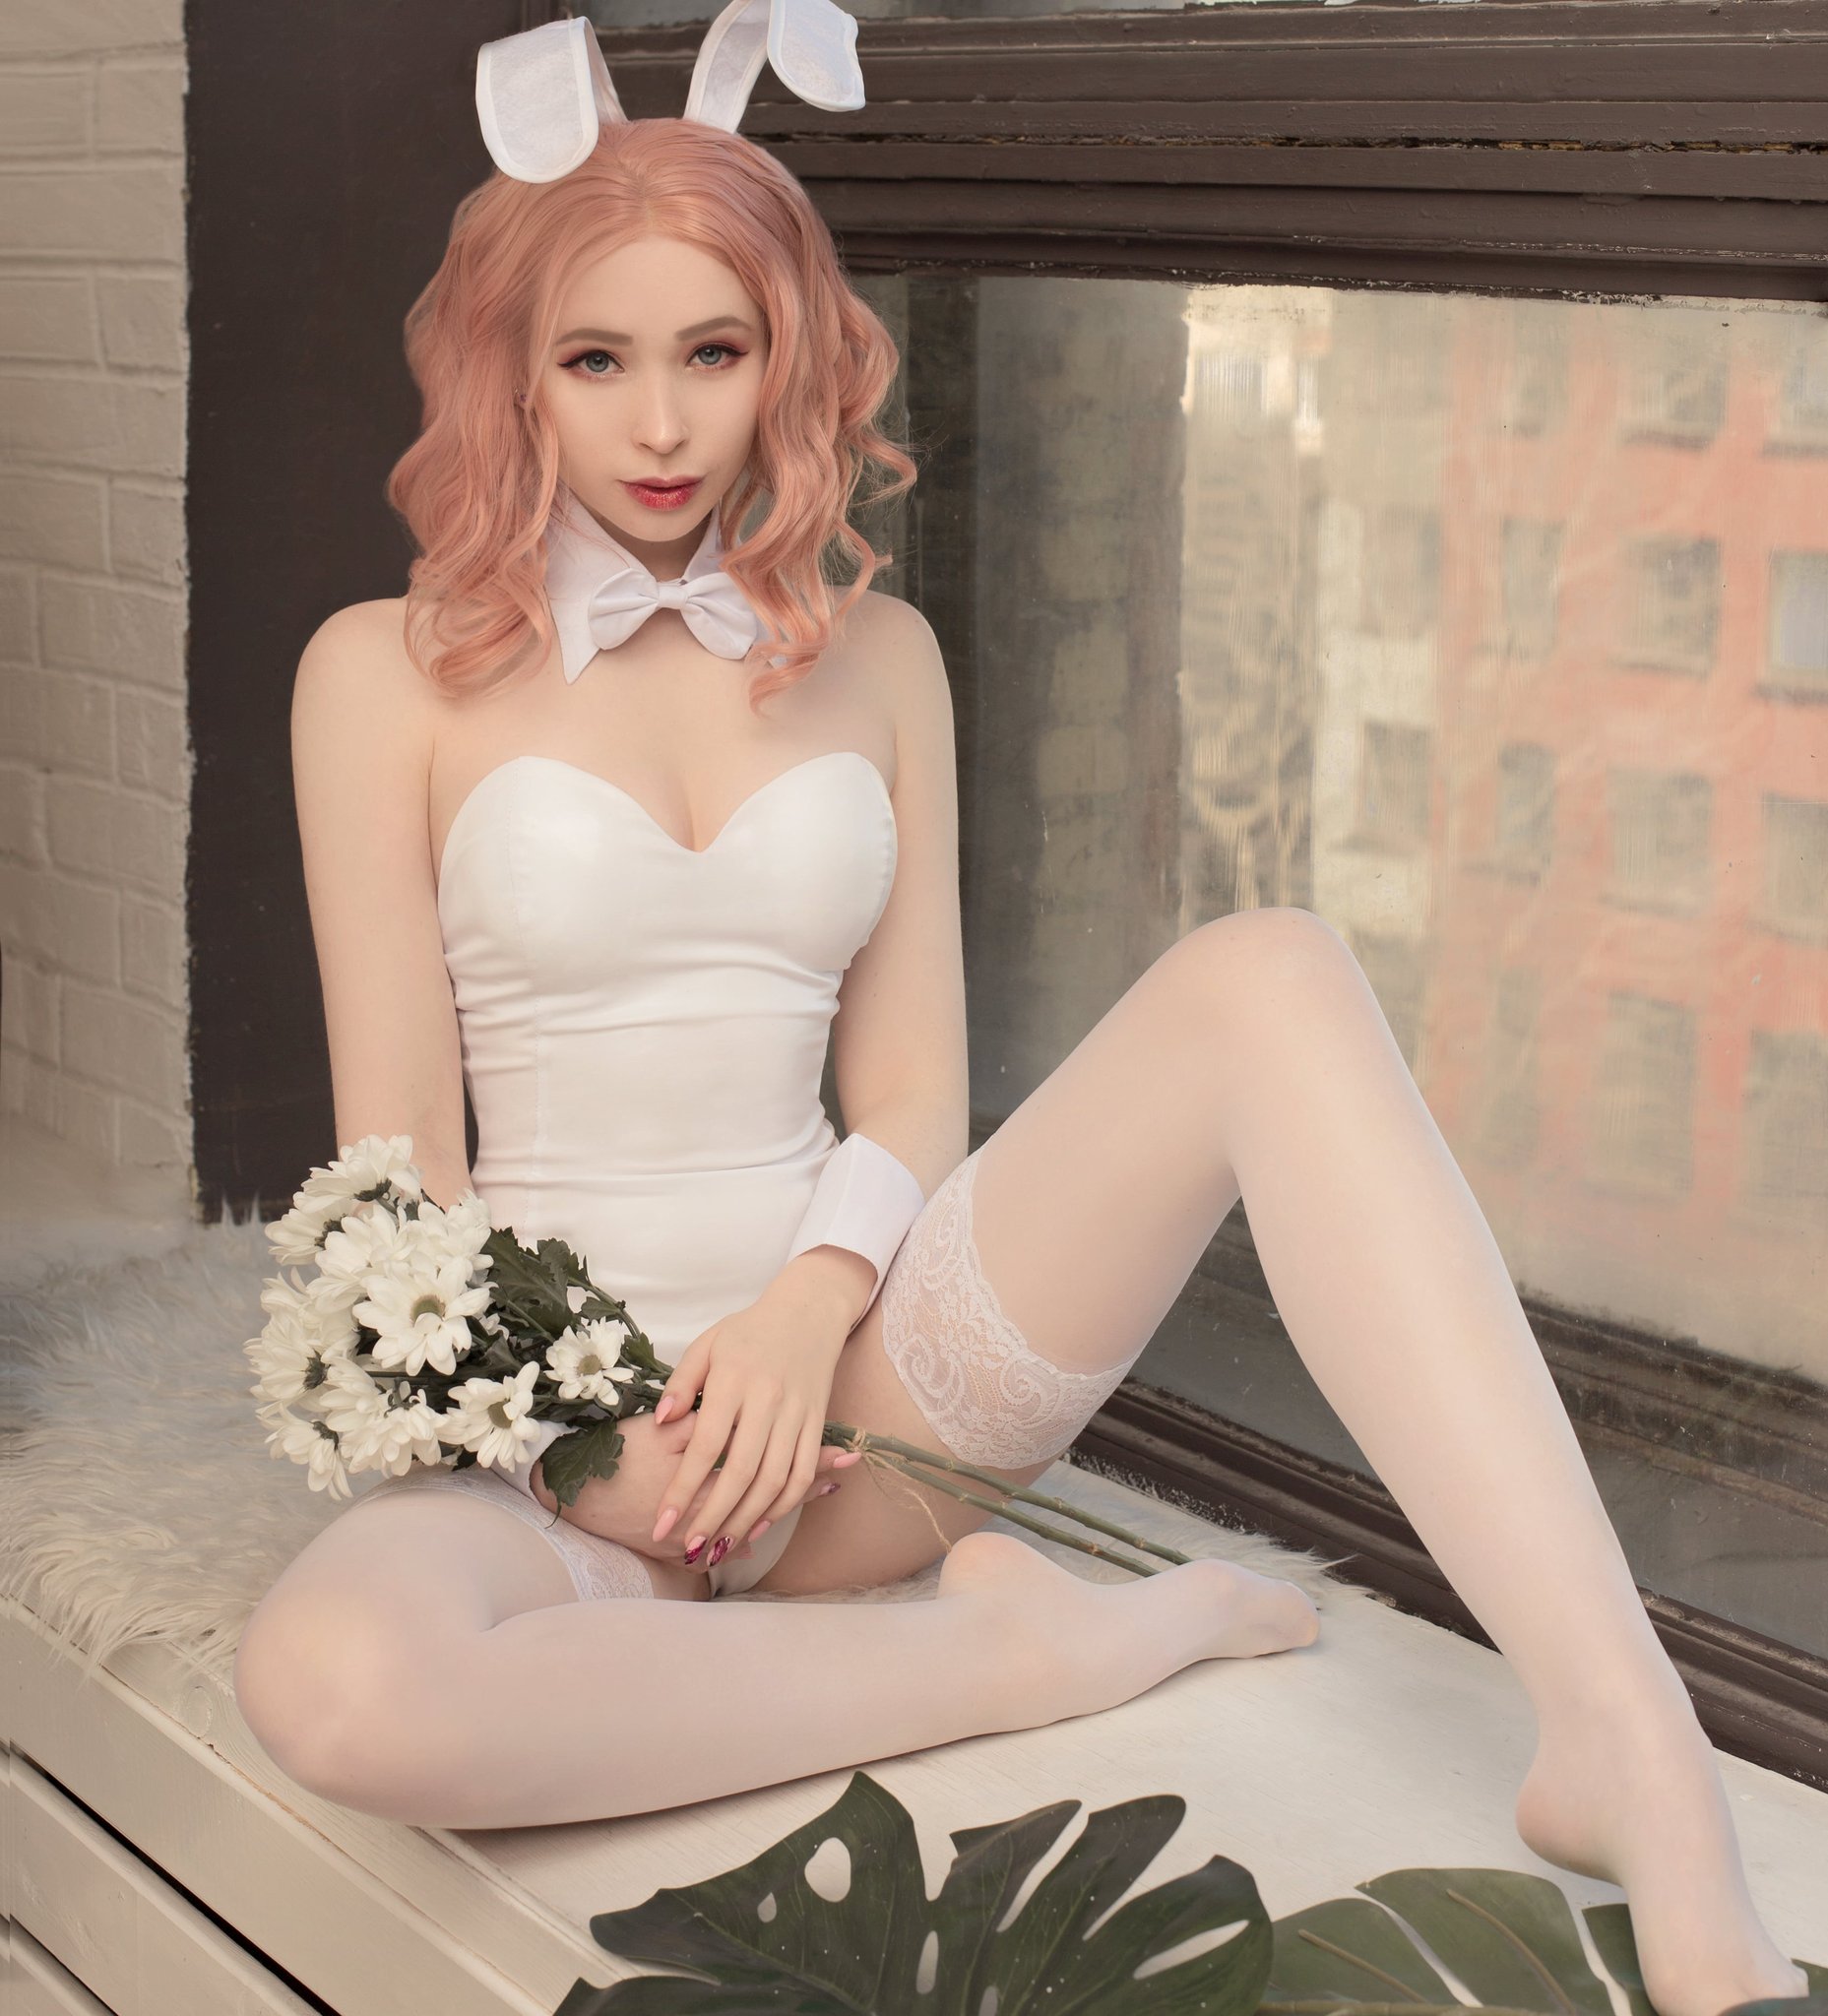 Sweet_bunny